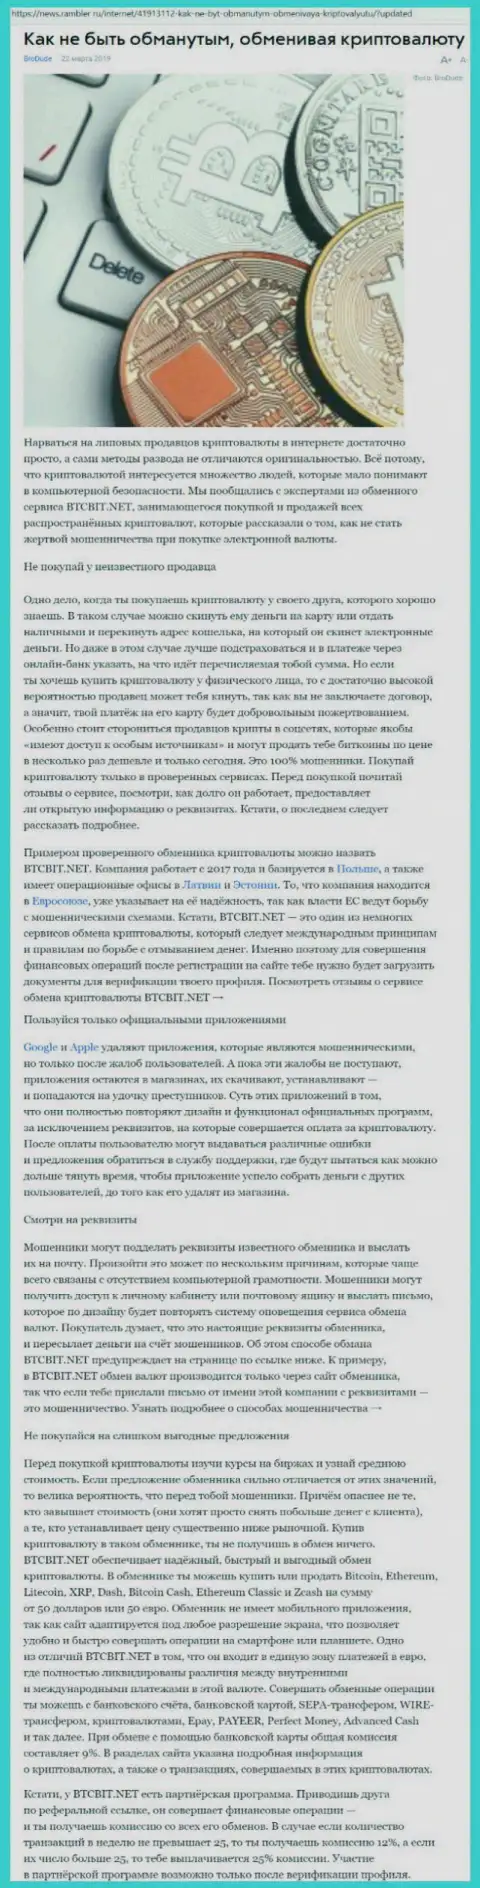 Статья о компании BTCBIT Net на News Rambler Ru